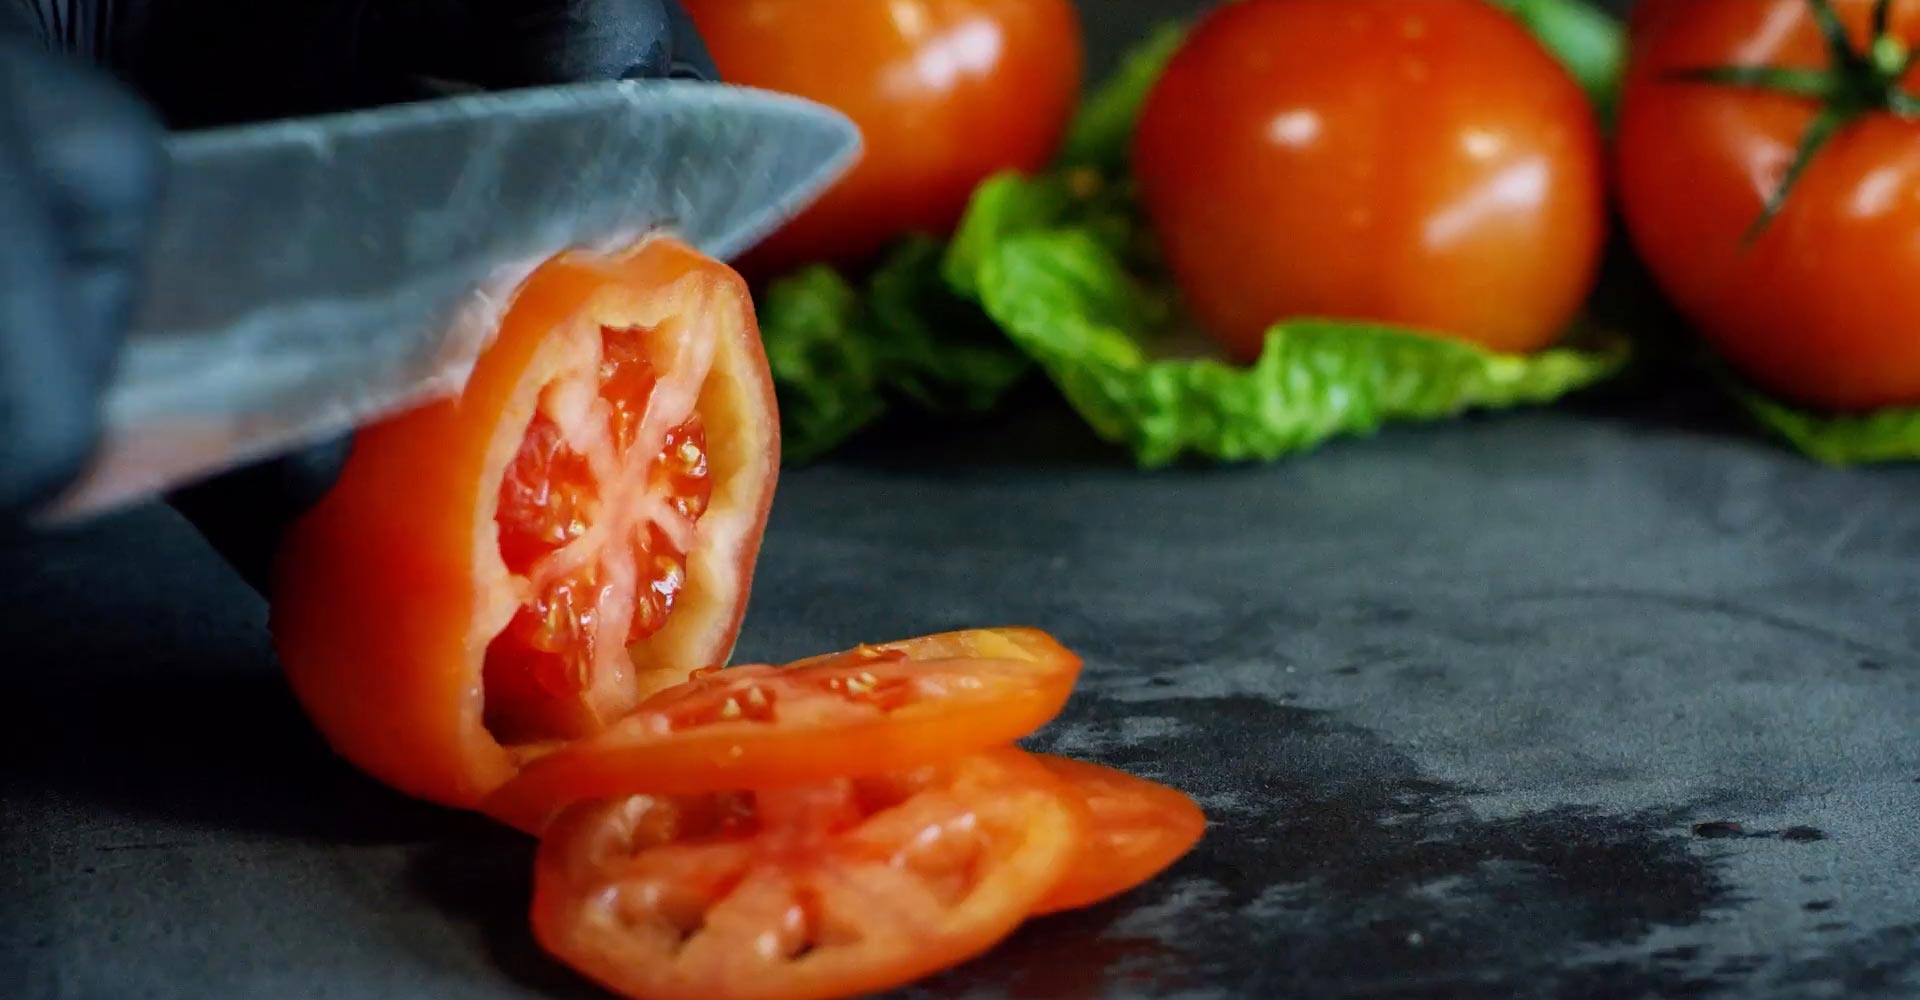 messer schneidet tomaten